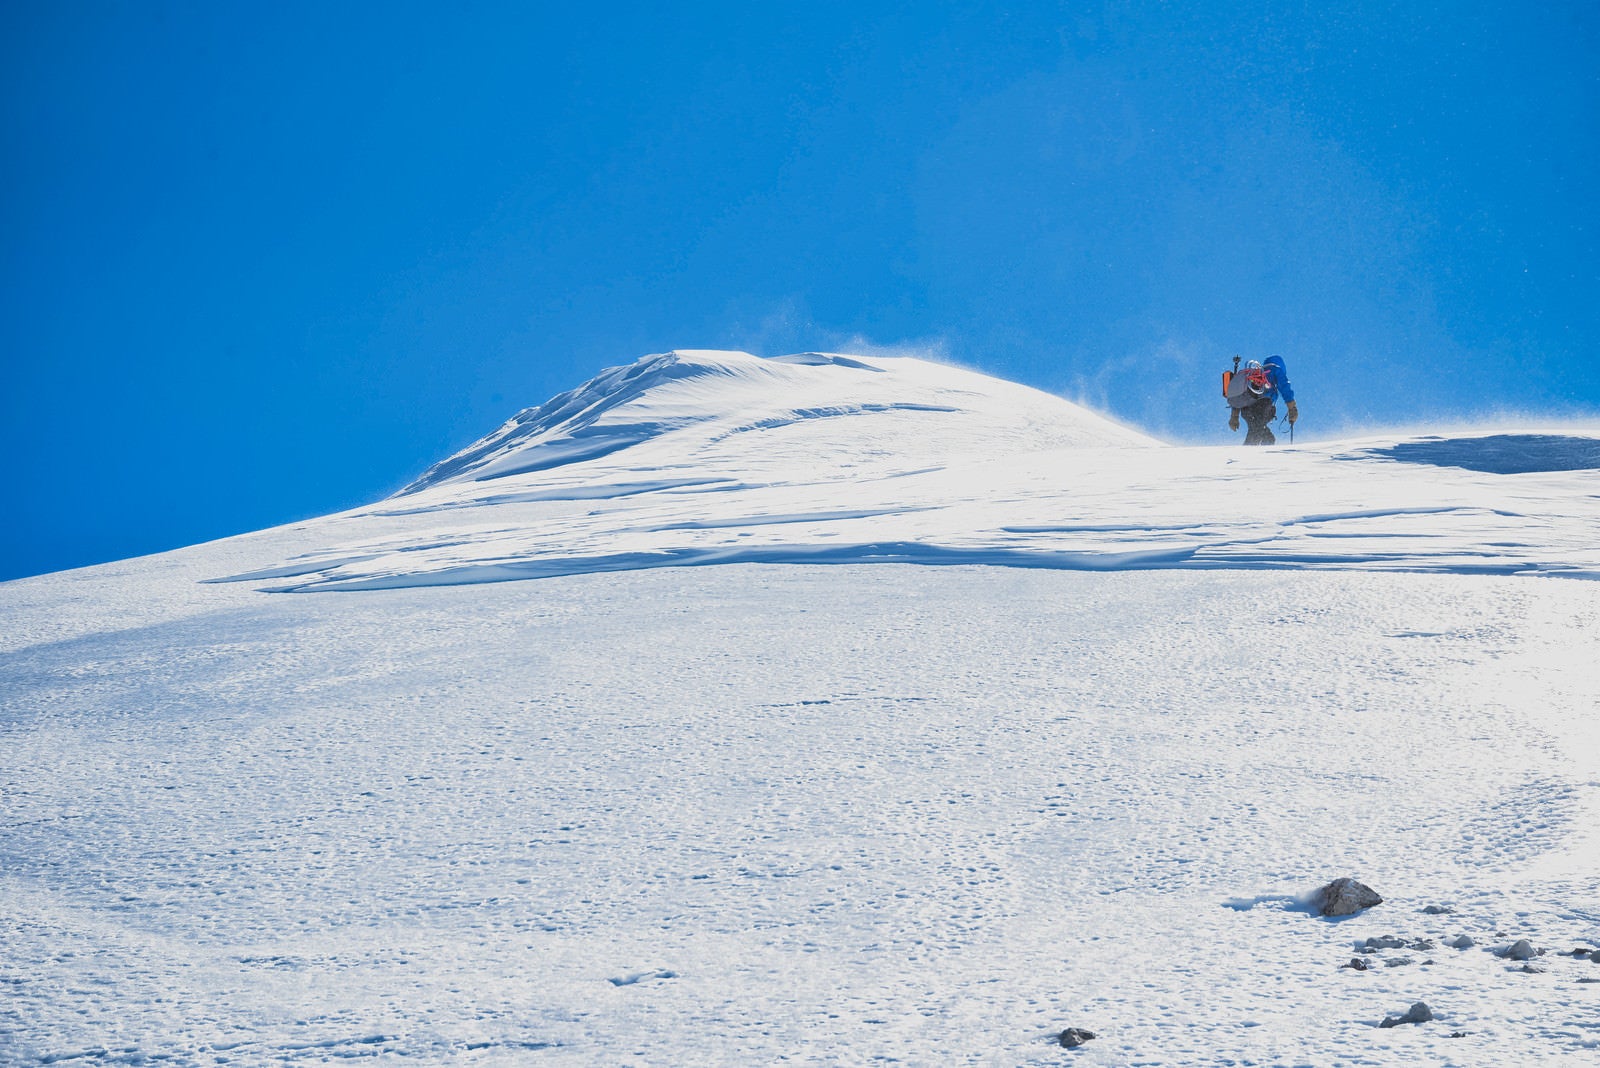 「剣ヶ峰山頂を目指す登山者」の写真